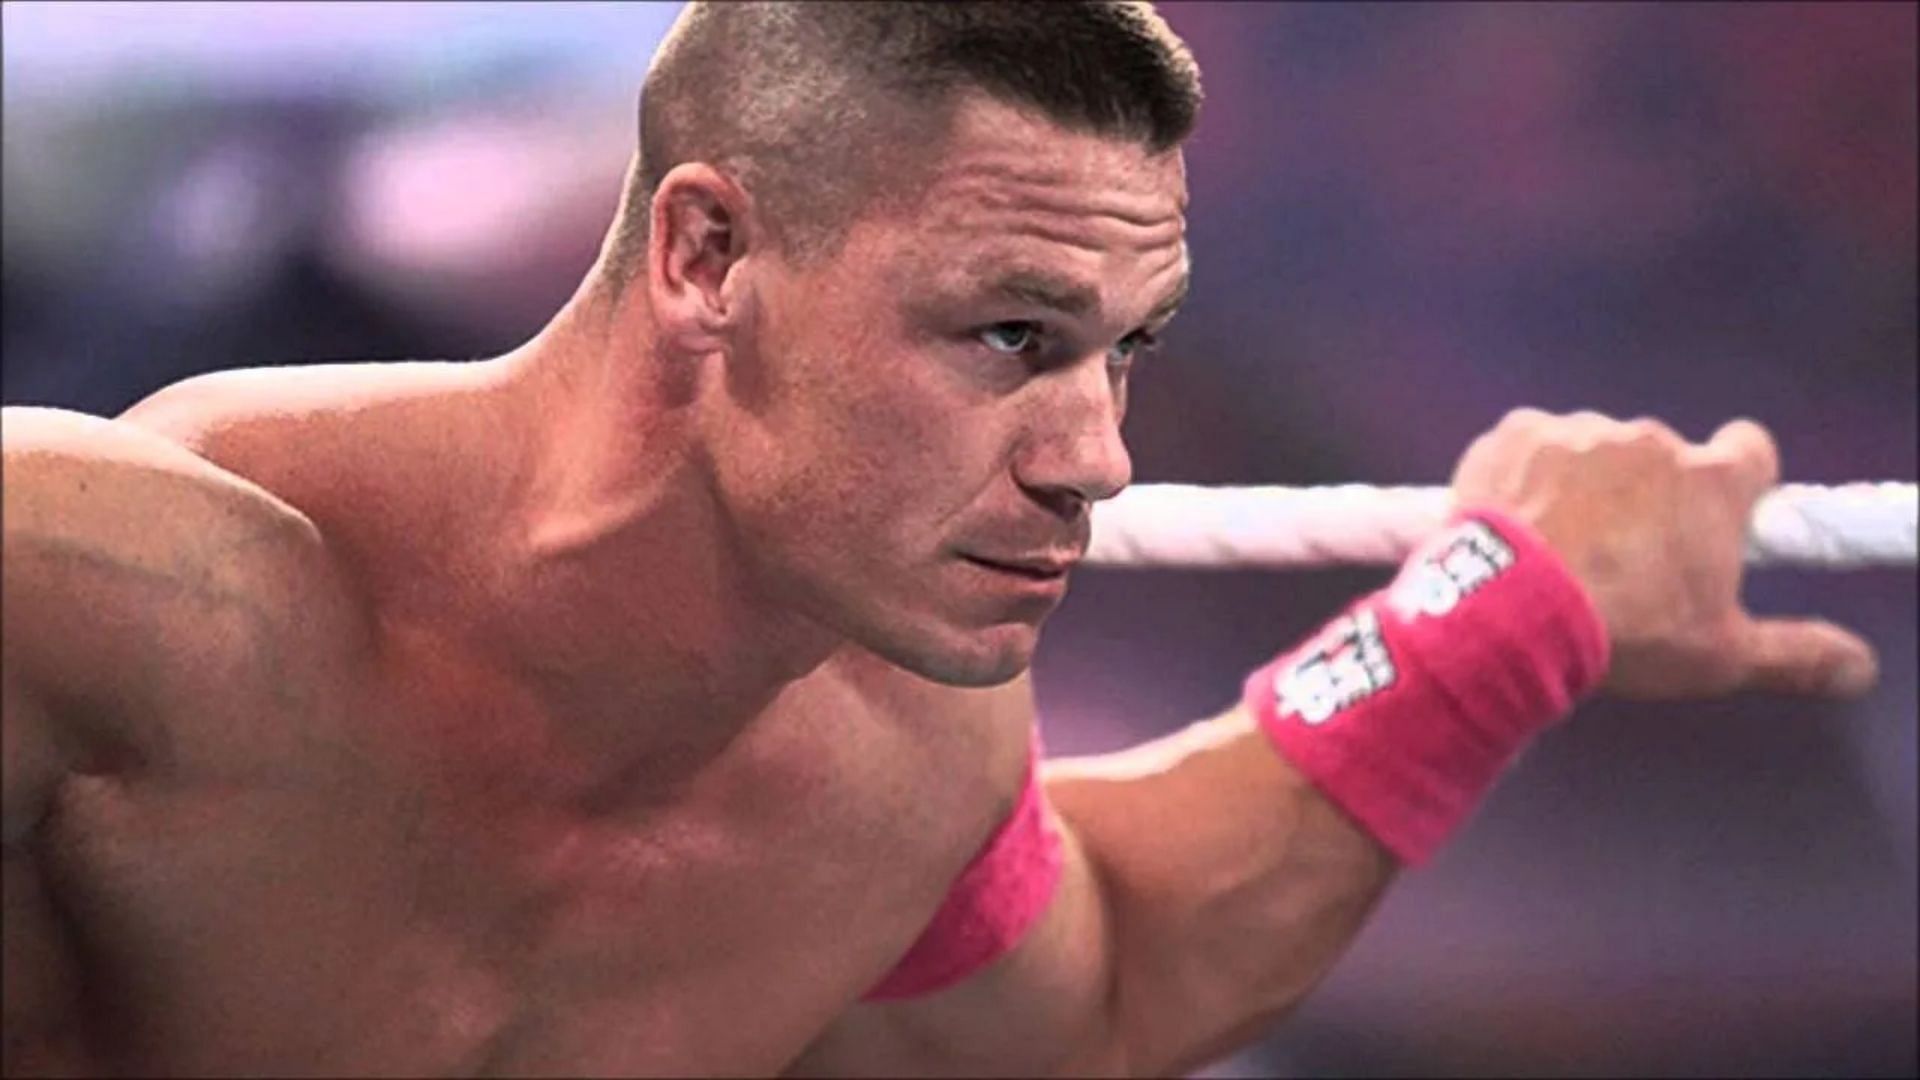 John Cena is one of WWE